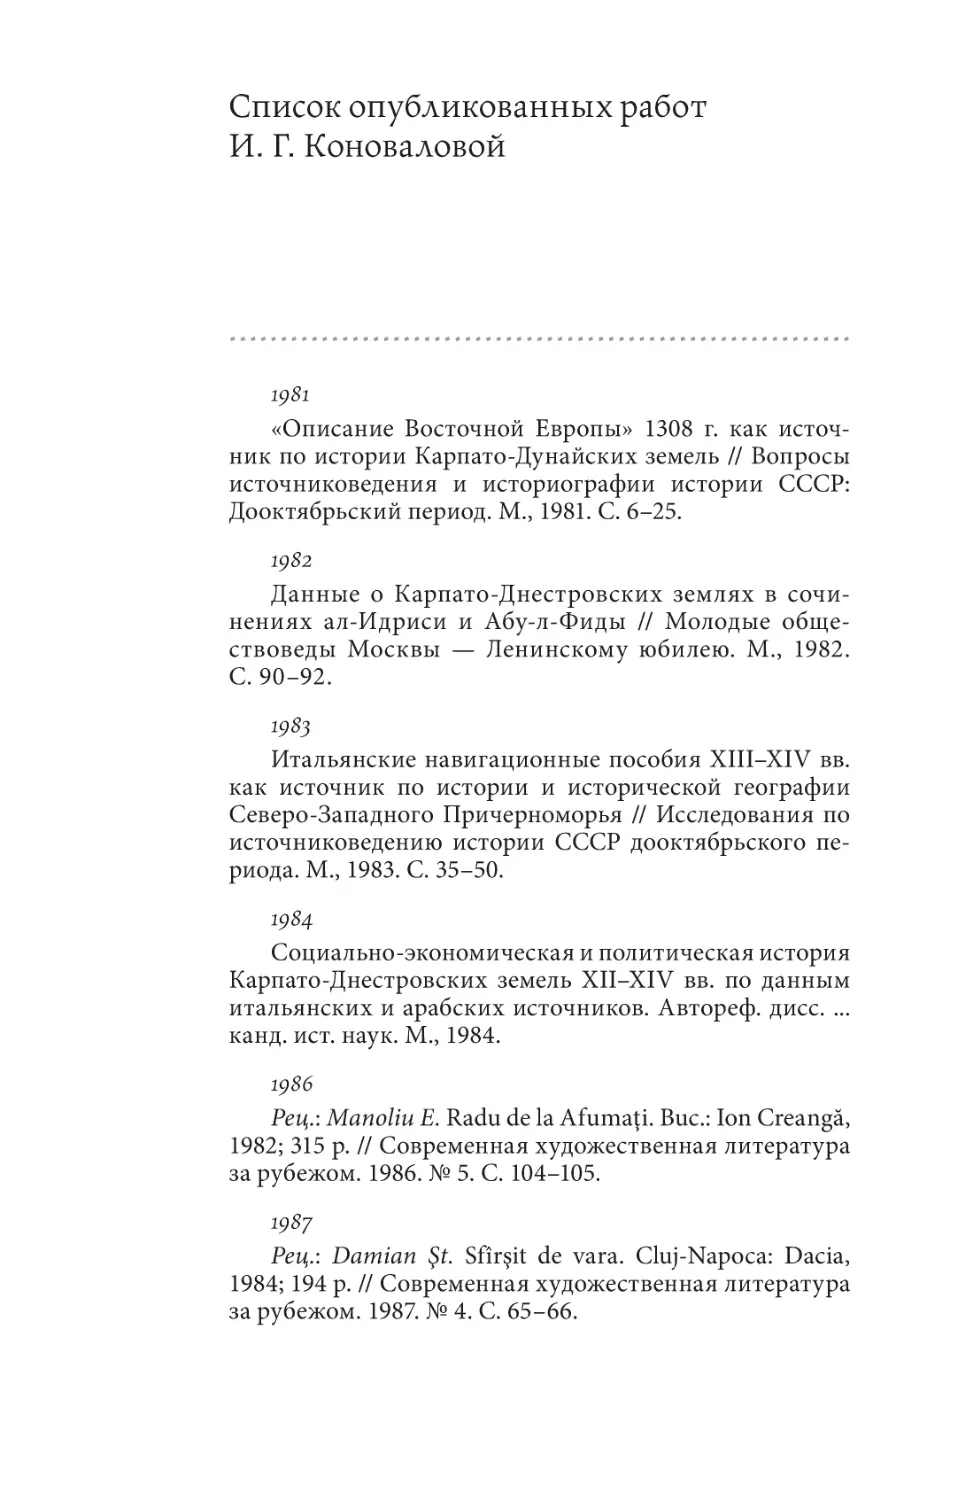 Список опубликованных работ И. Г. Коноваловой